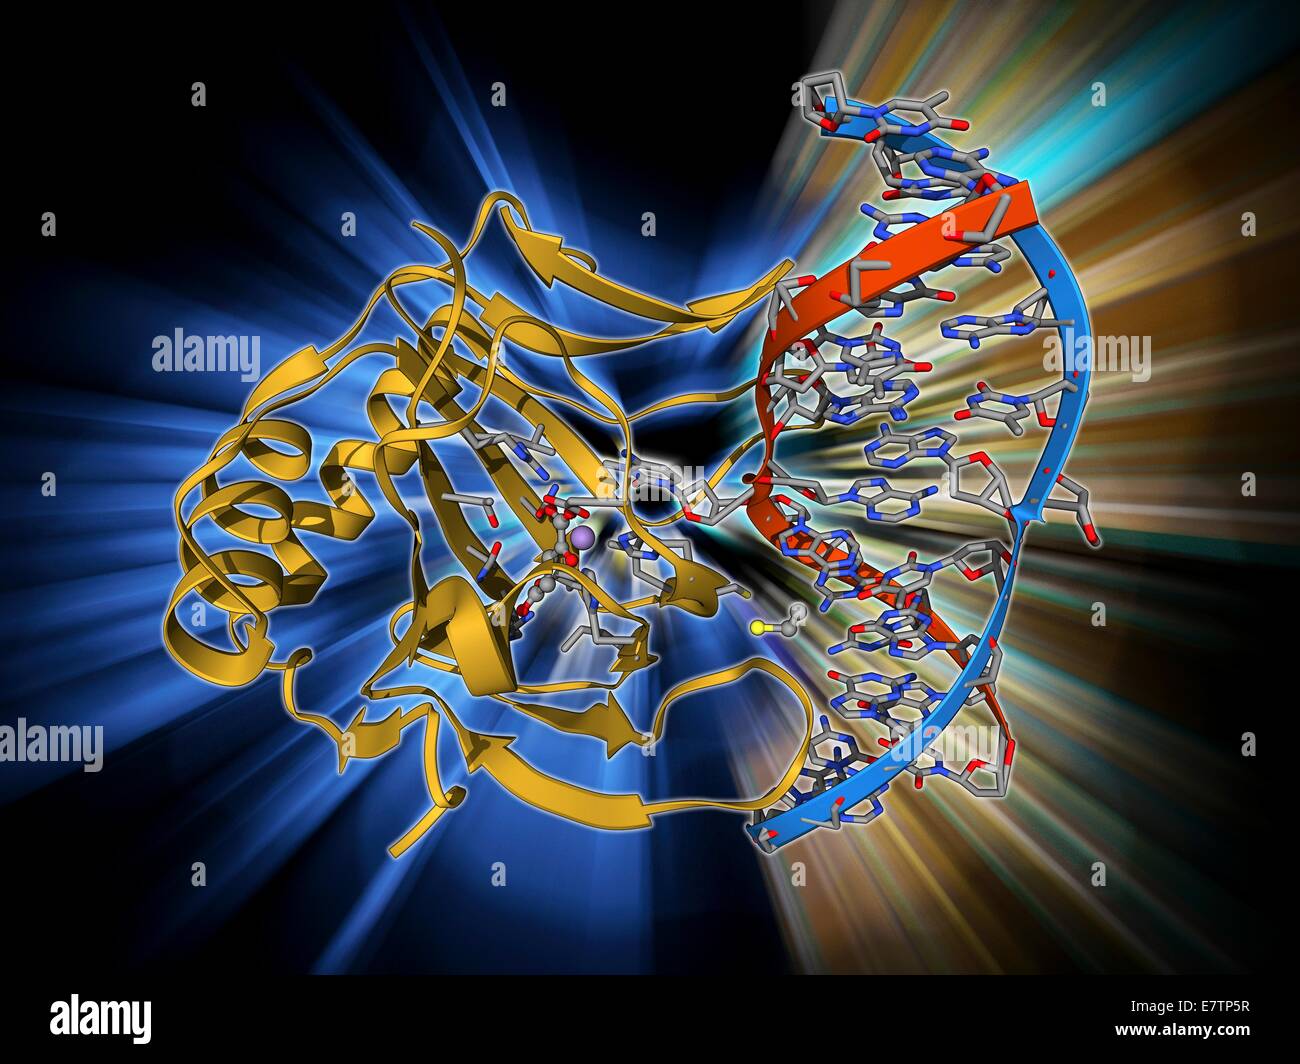 DNA-Reparaturenzym. Molekulares Modell der DNA (Desoxyribonukleinsäure) reparieren Enzym Dioxygenase gebunden an ein Molekül der DNA (rot und blau). Stockfoto